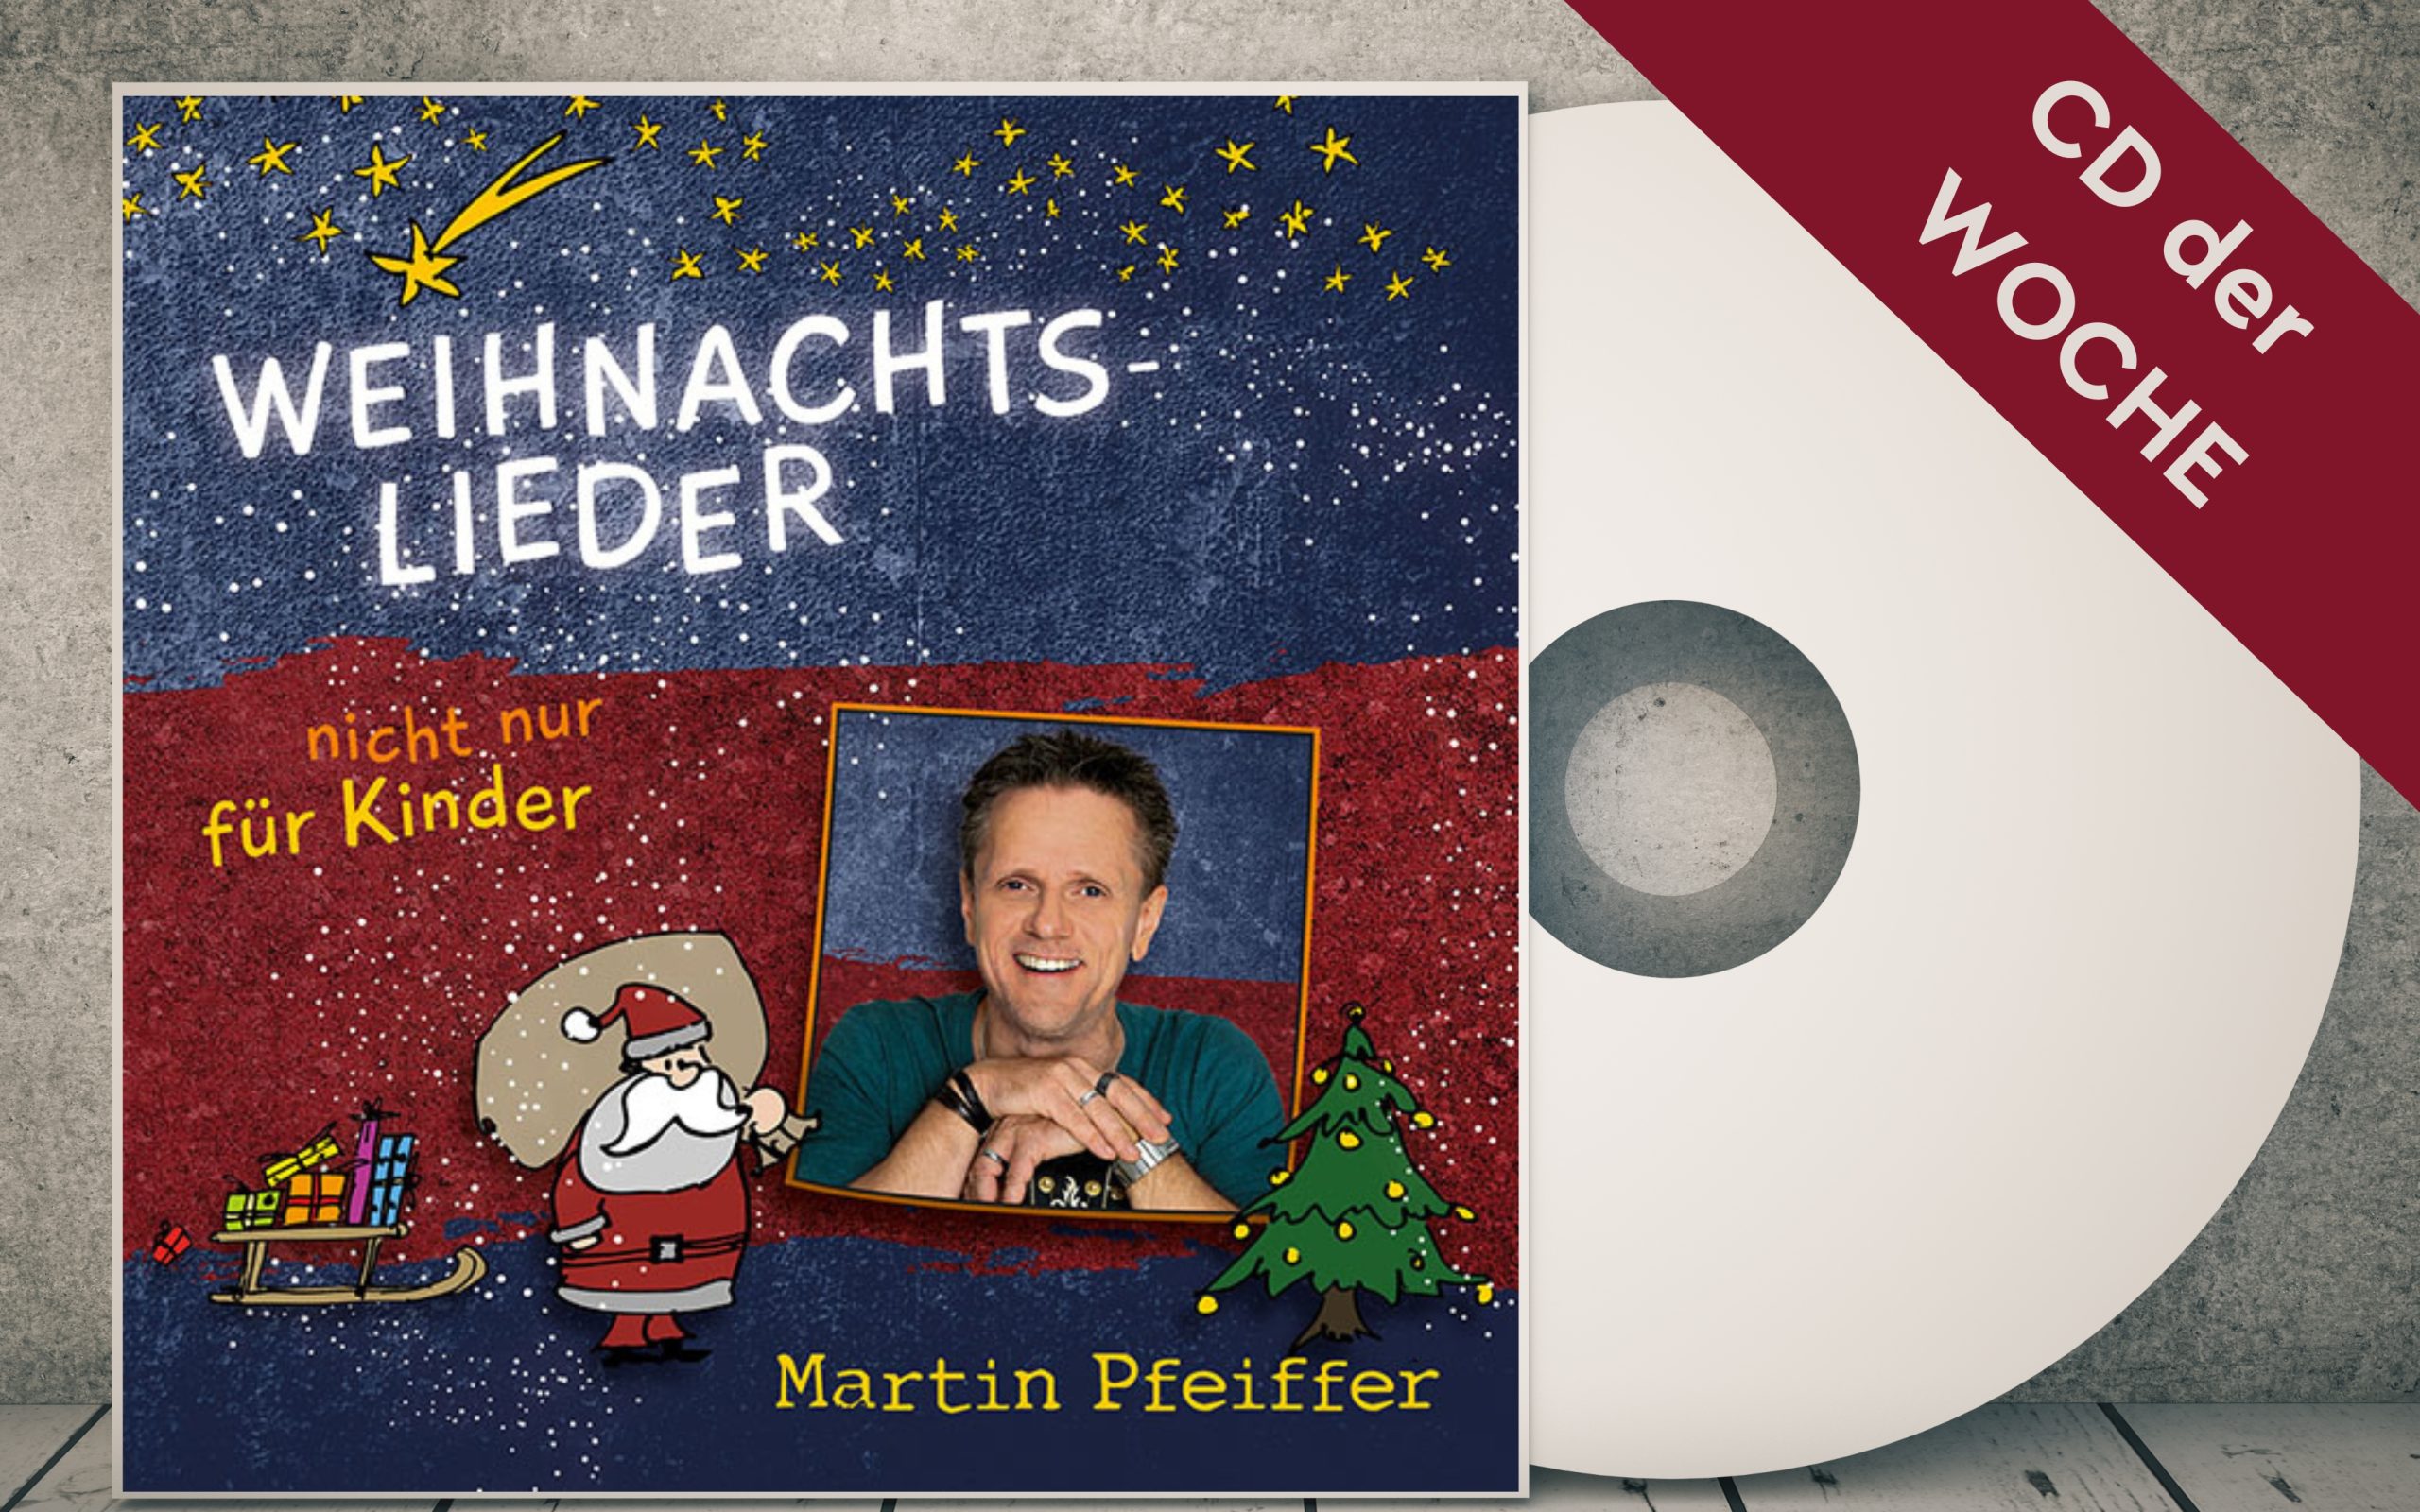 Martin-Pfeiffer-Weihnachtslieder-CD-der-Woche